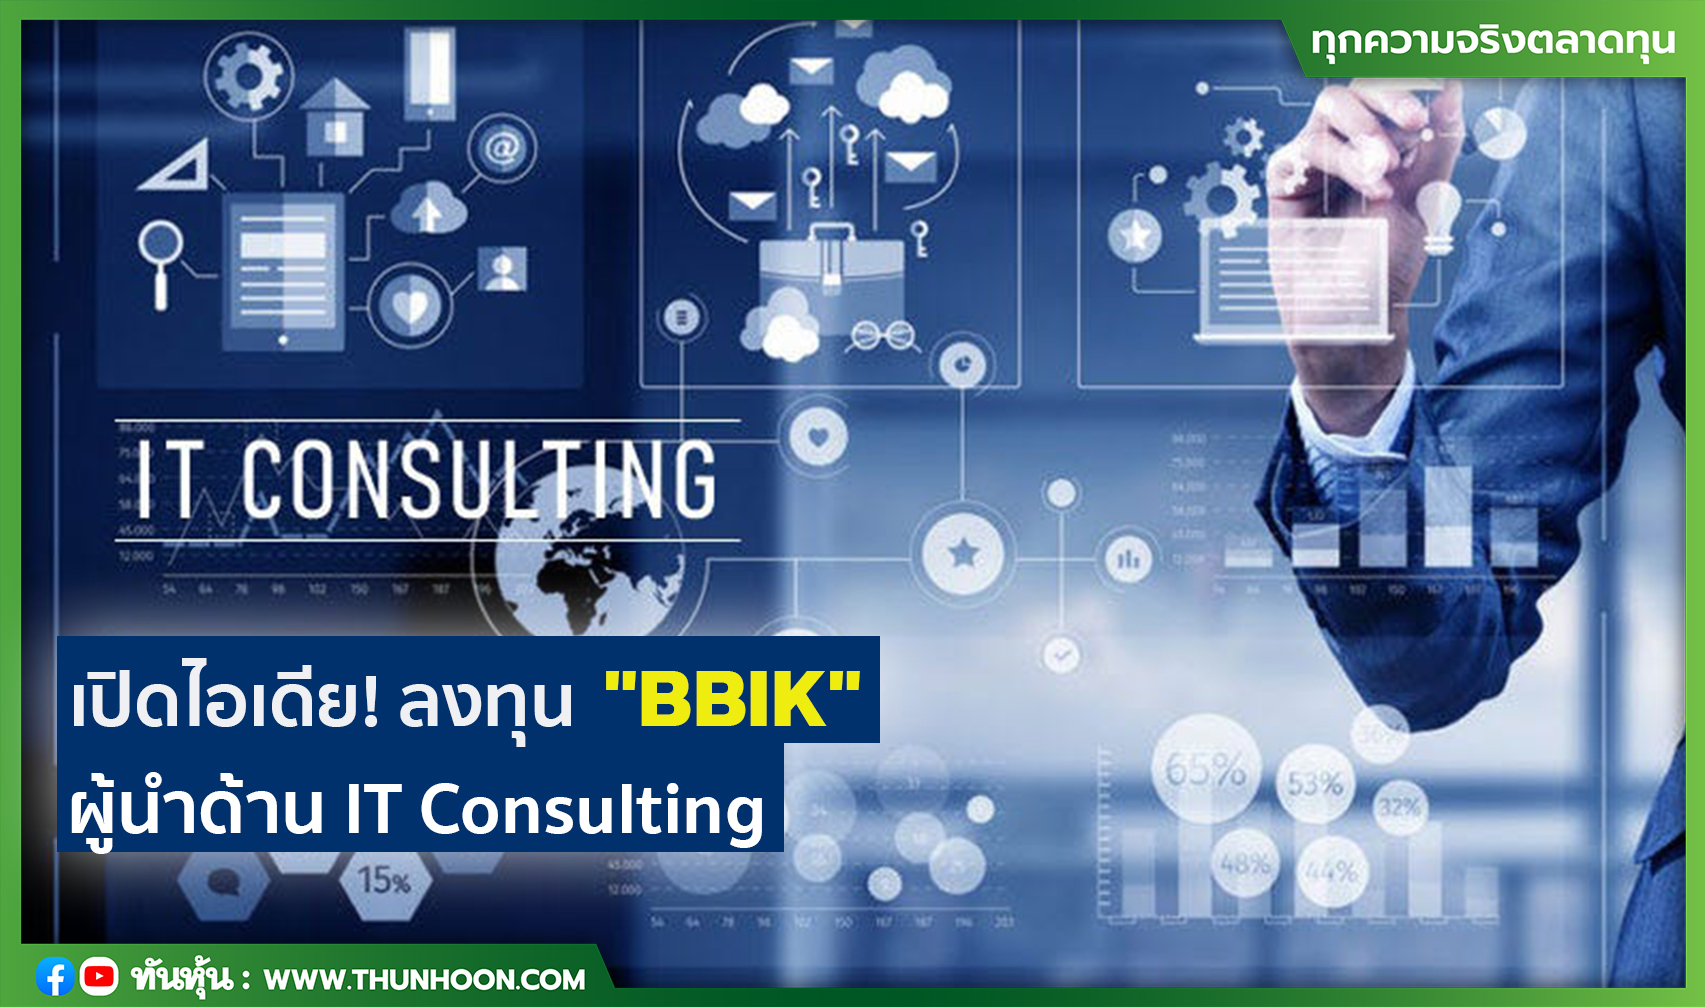 เปิดไอเดีย! ลงทุน "BBIK" ผู้นำด้าน IT Consulting 